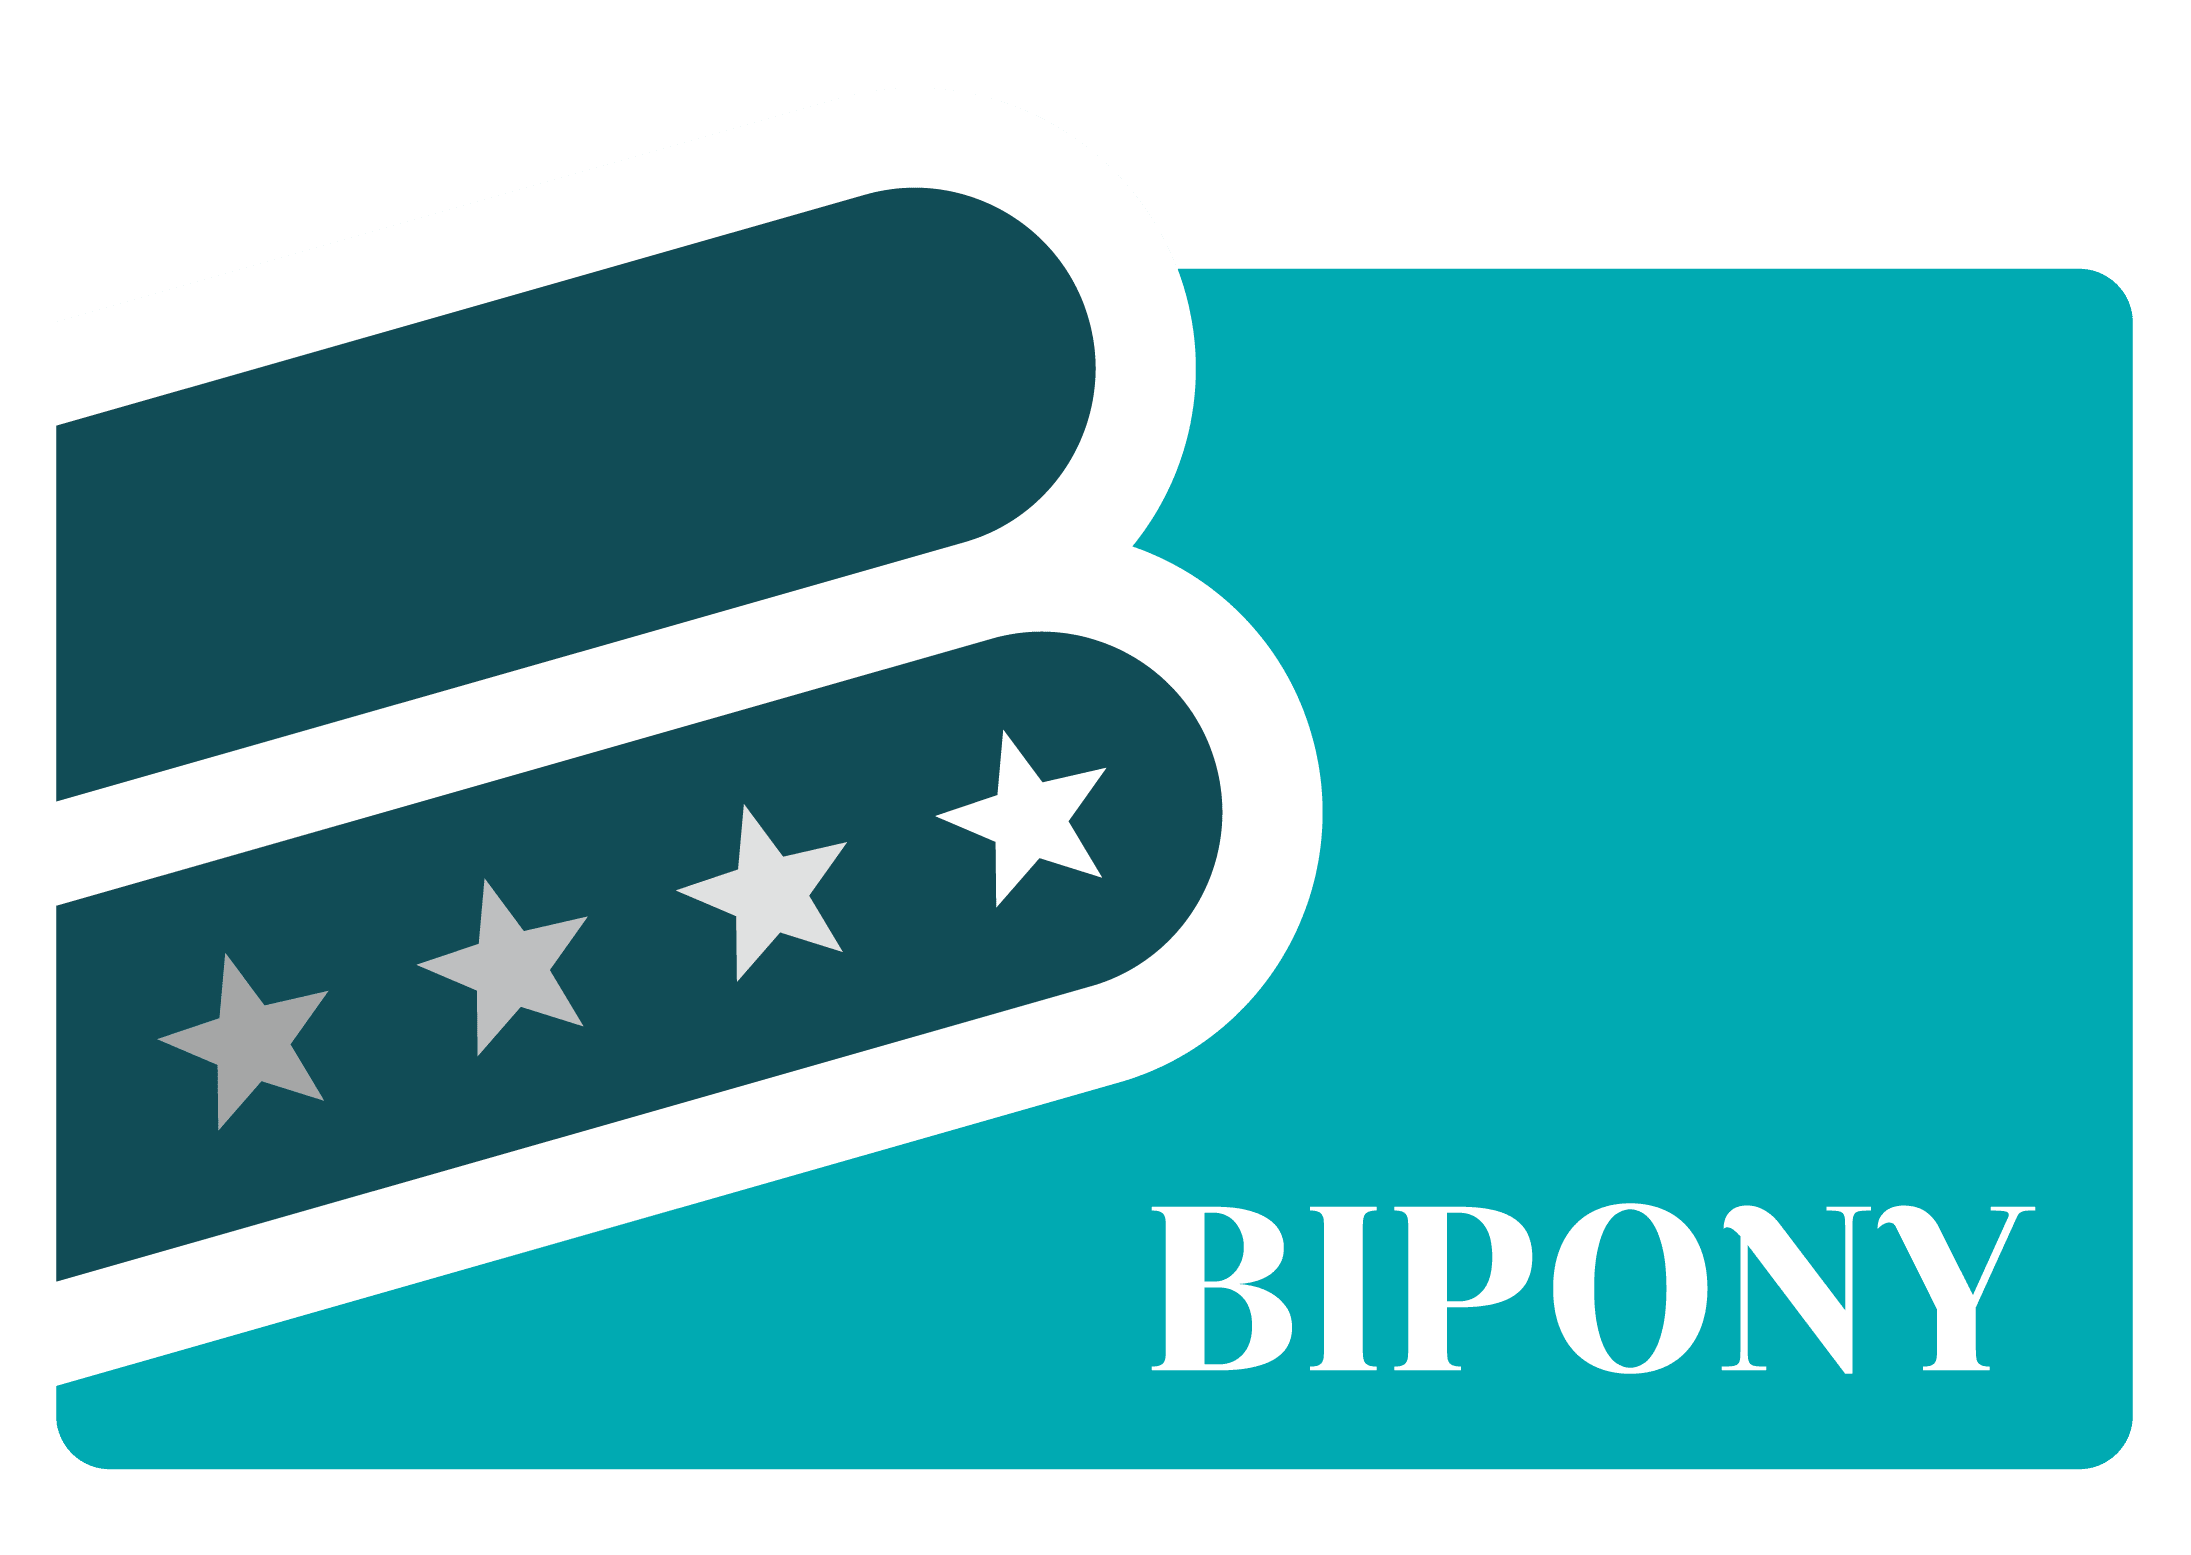 Bipony Business Watch